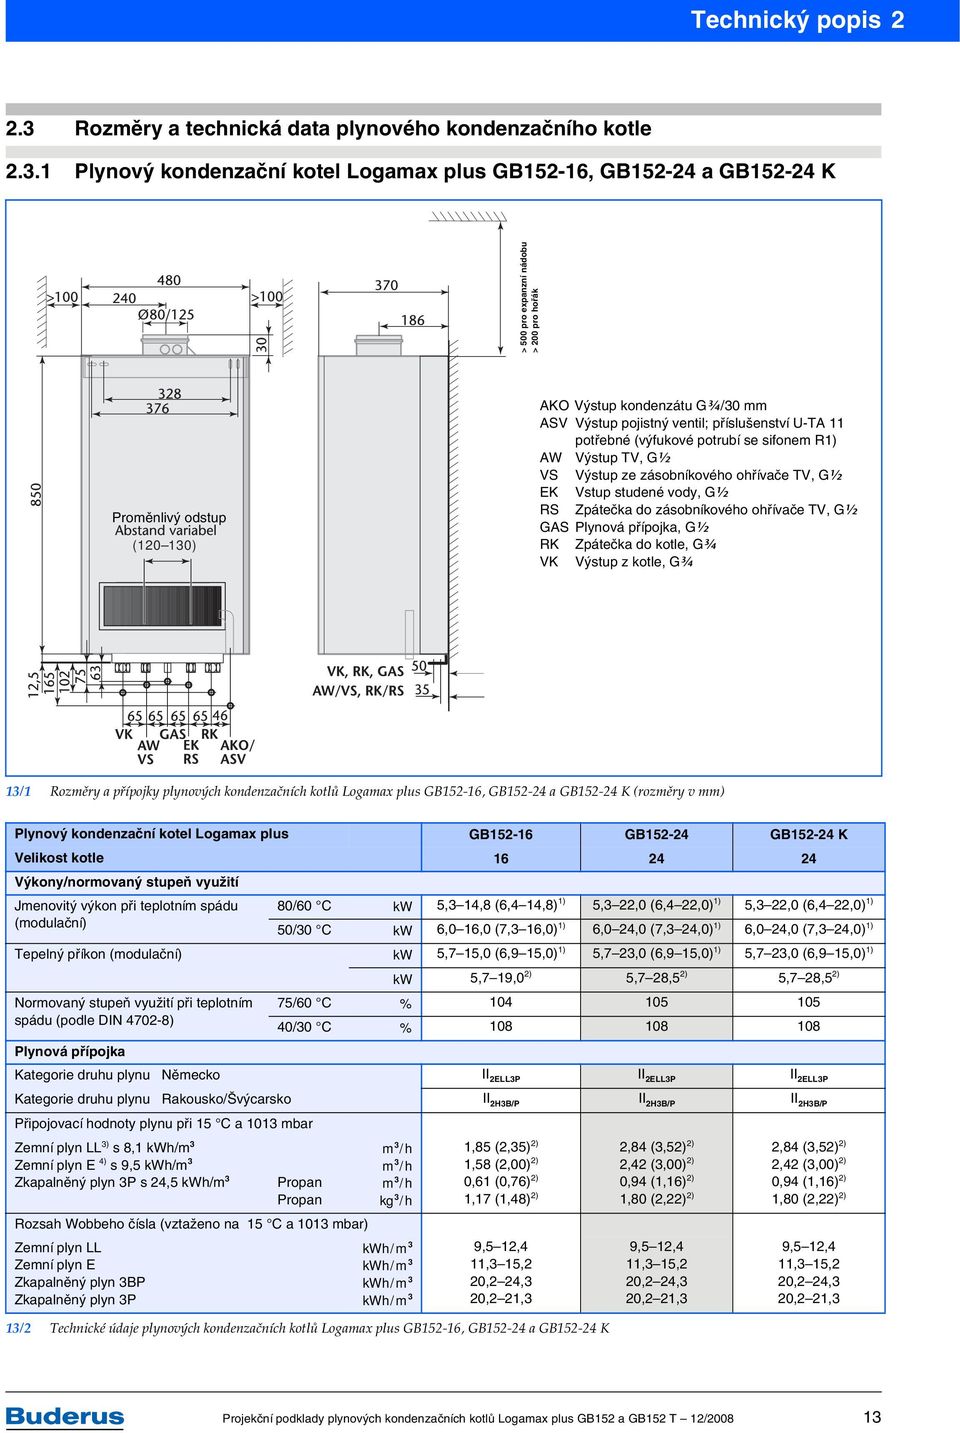 1 Plynový kondenzační kotel Logamax plus GB152-16, GB152-24 a GB152-24 K > 500 pro expanzní nádobu > 200 pro hořák Proměnlivý odstup (120 130) AKO Výstup kondenzátu G6/30 ASV Výstup pojistný ventil;